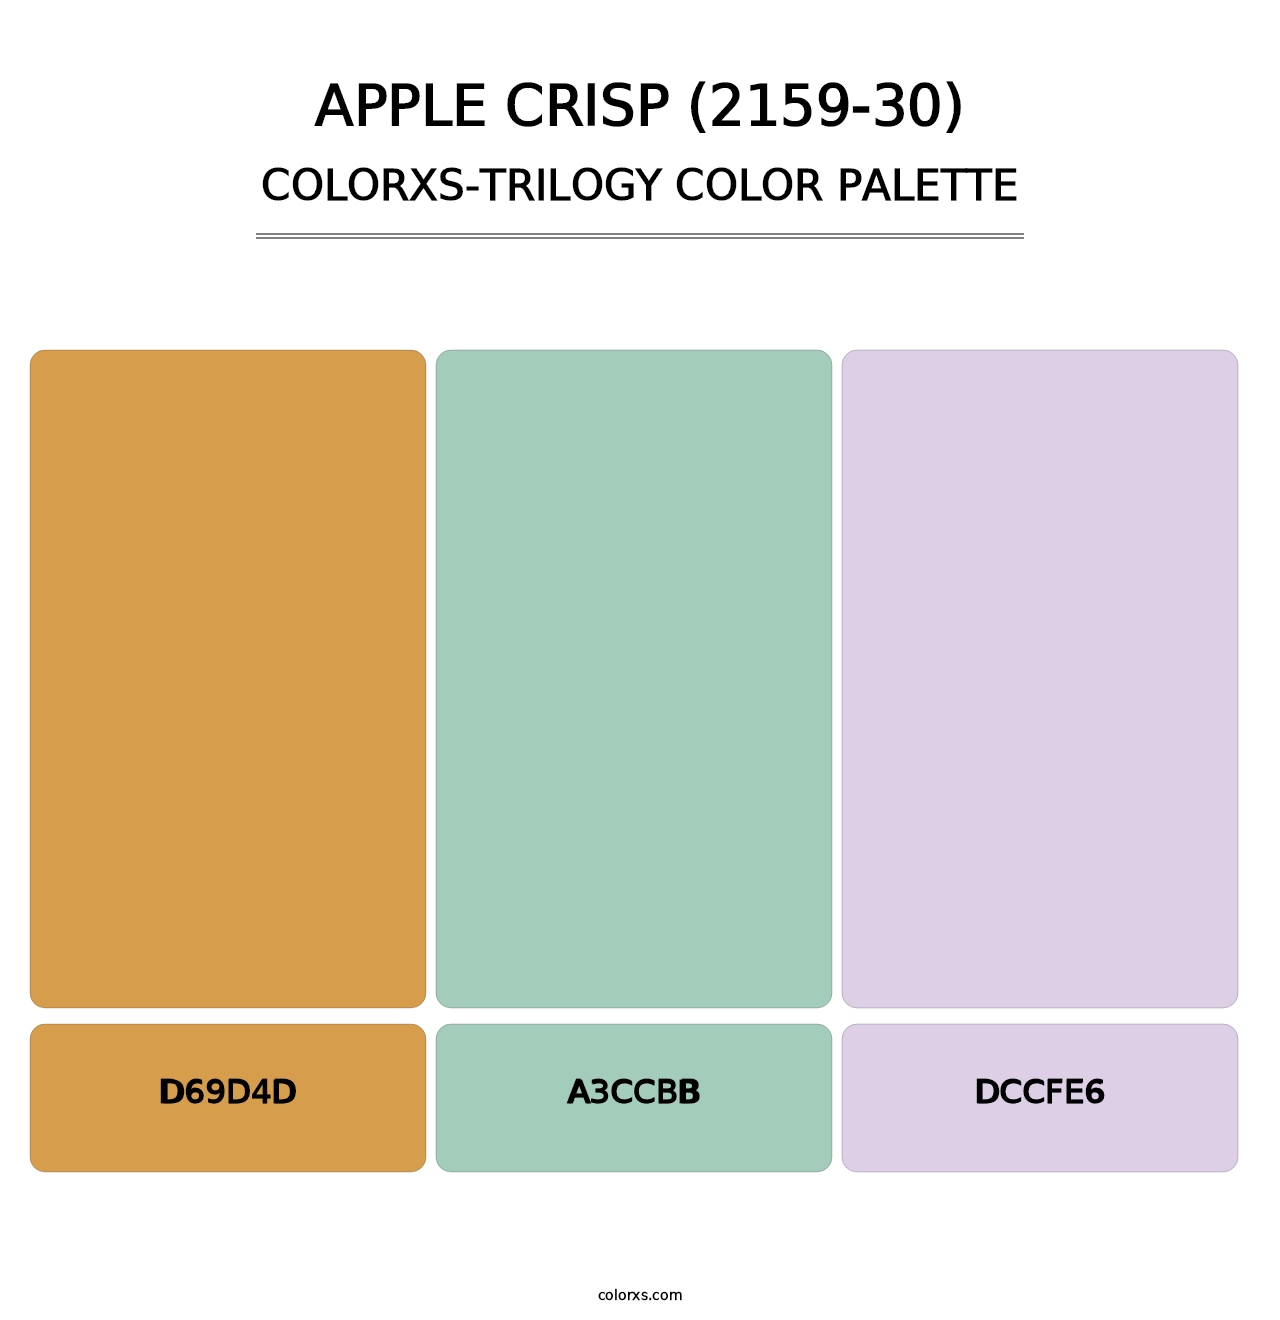 Apple Crisp (2159-30) - Colorxs Trilogy Palette